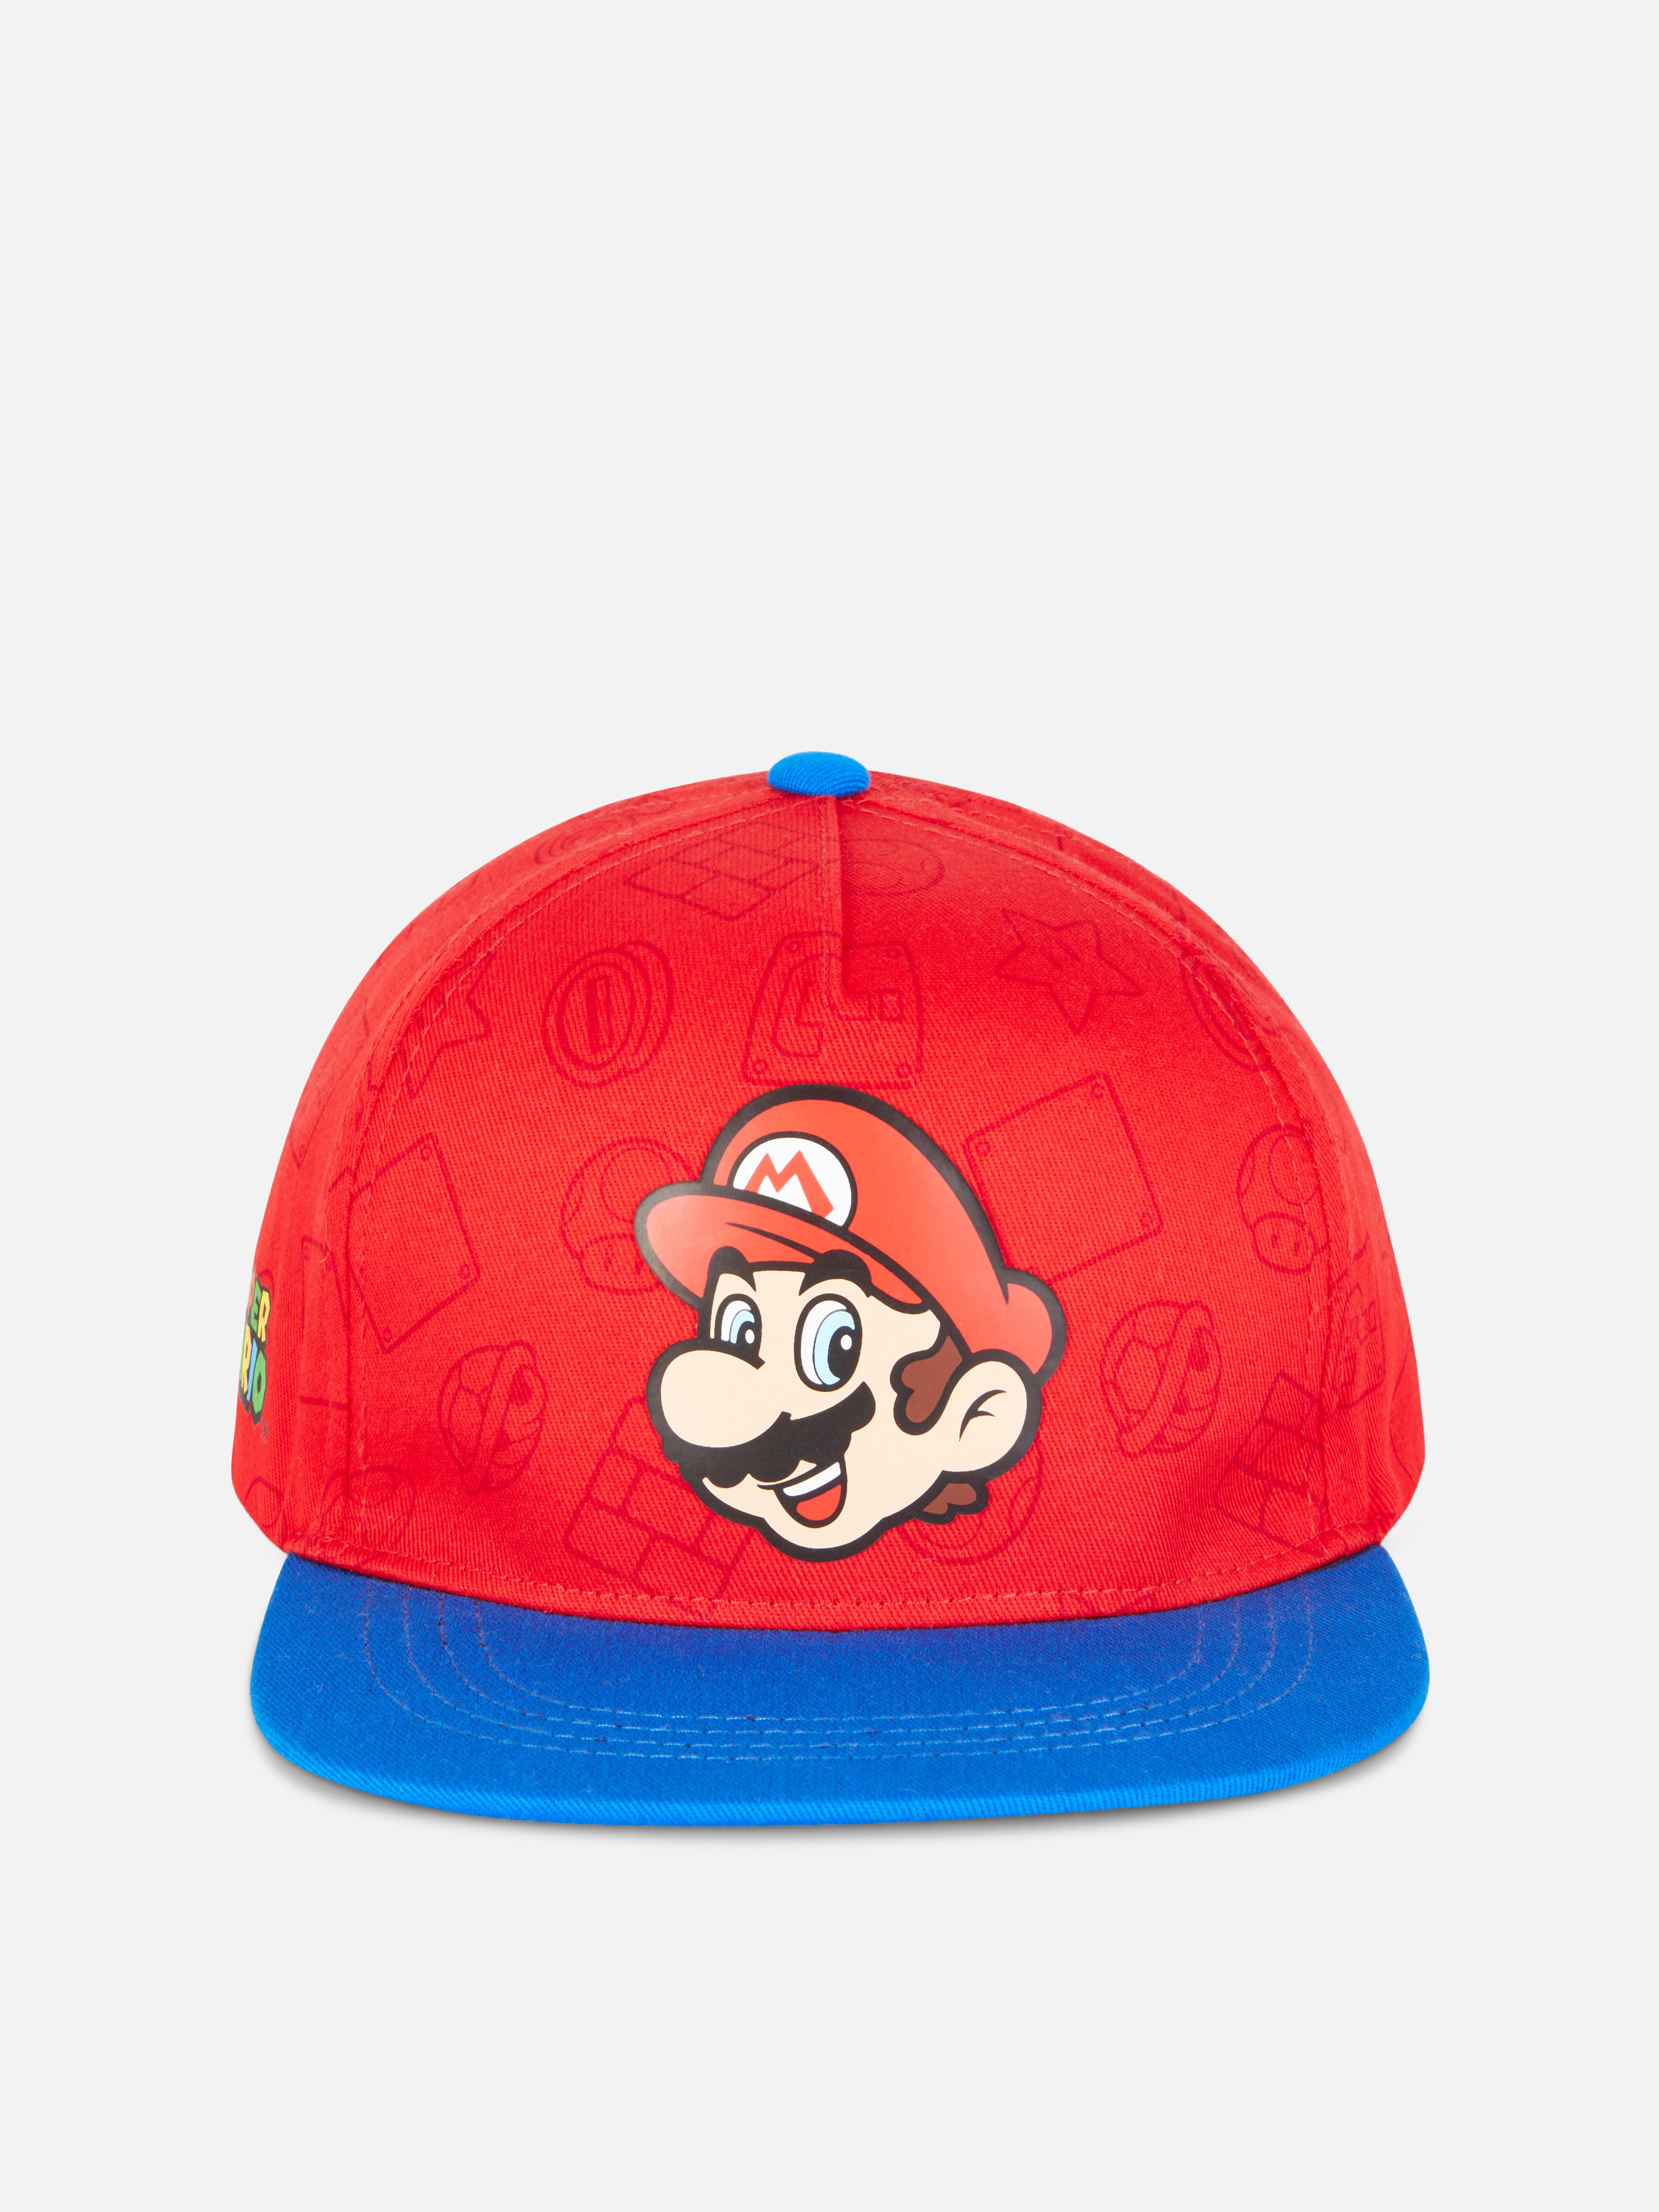 Super Mario Printed Cap